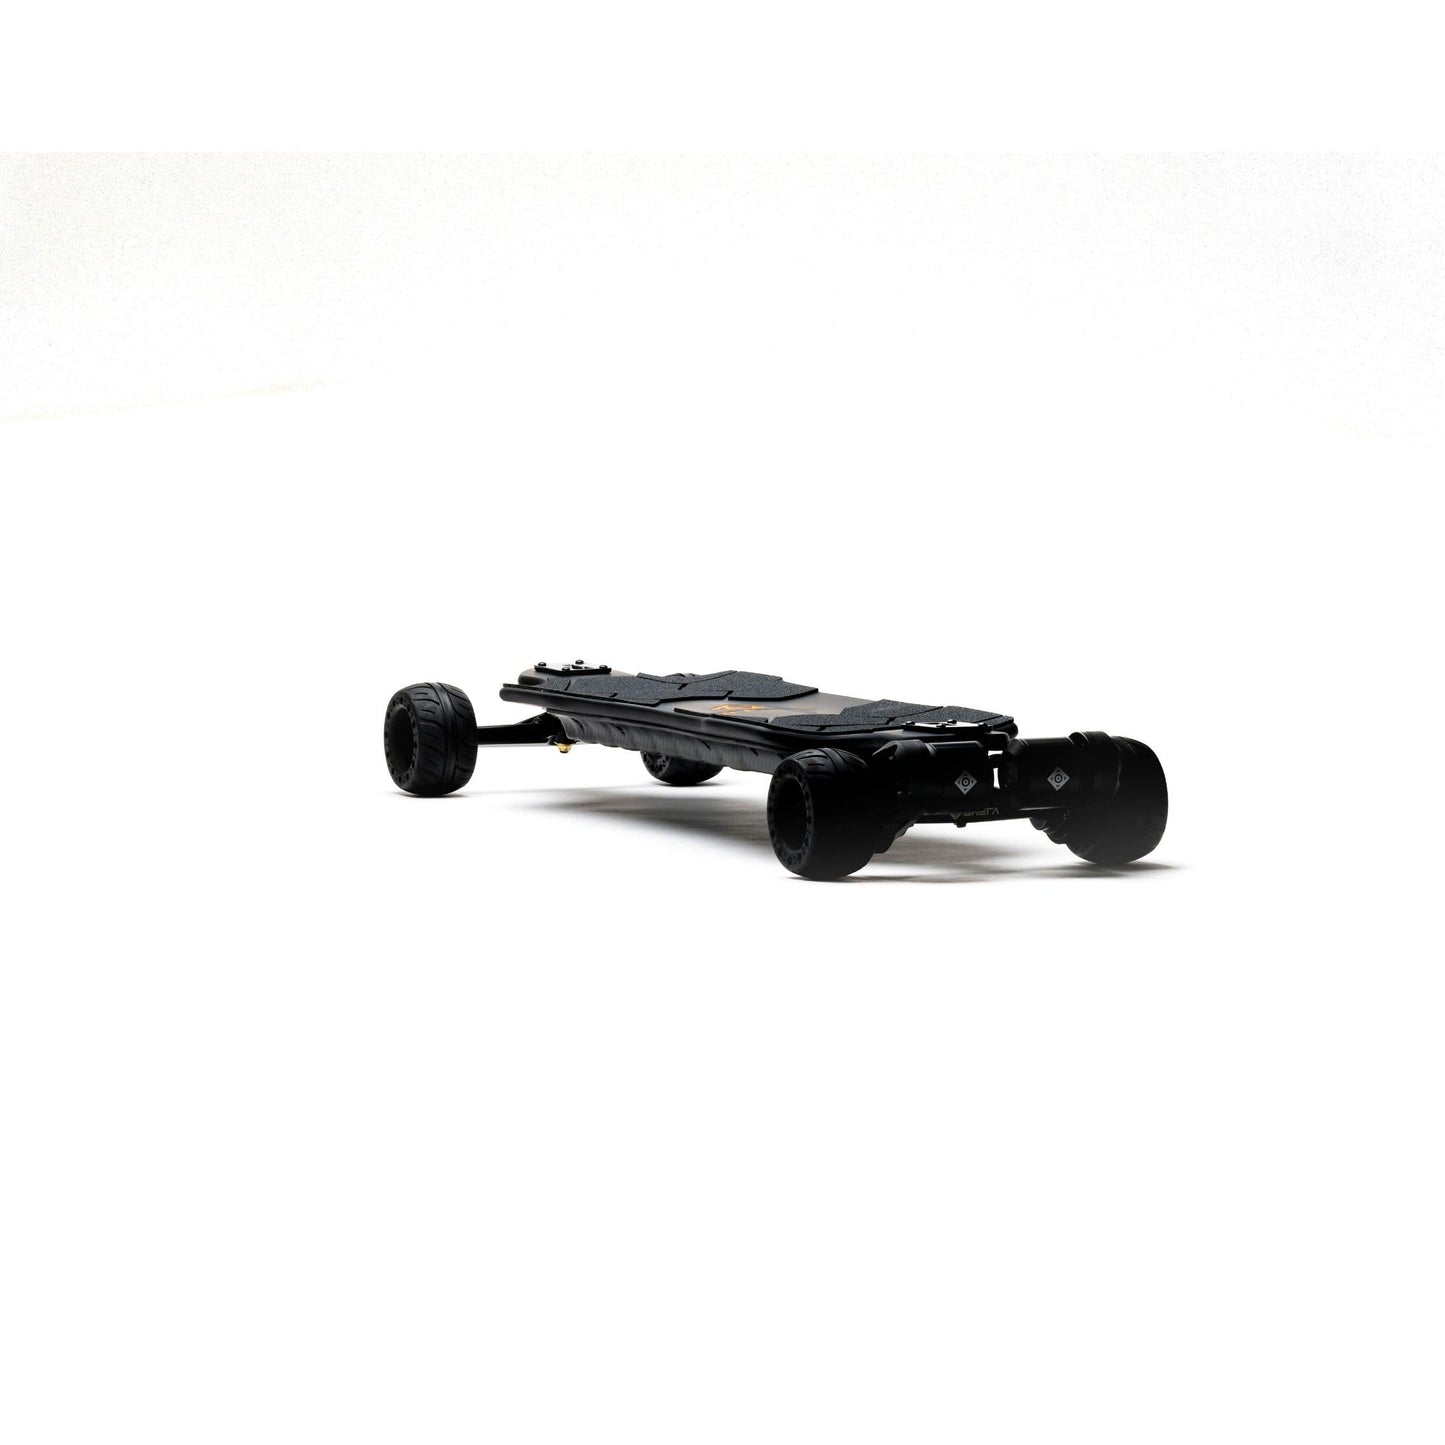 Onsra Black Carve 2 Dual Belt Electric Skateboard